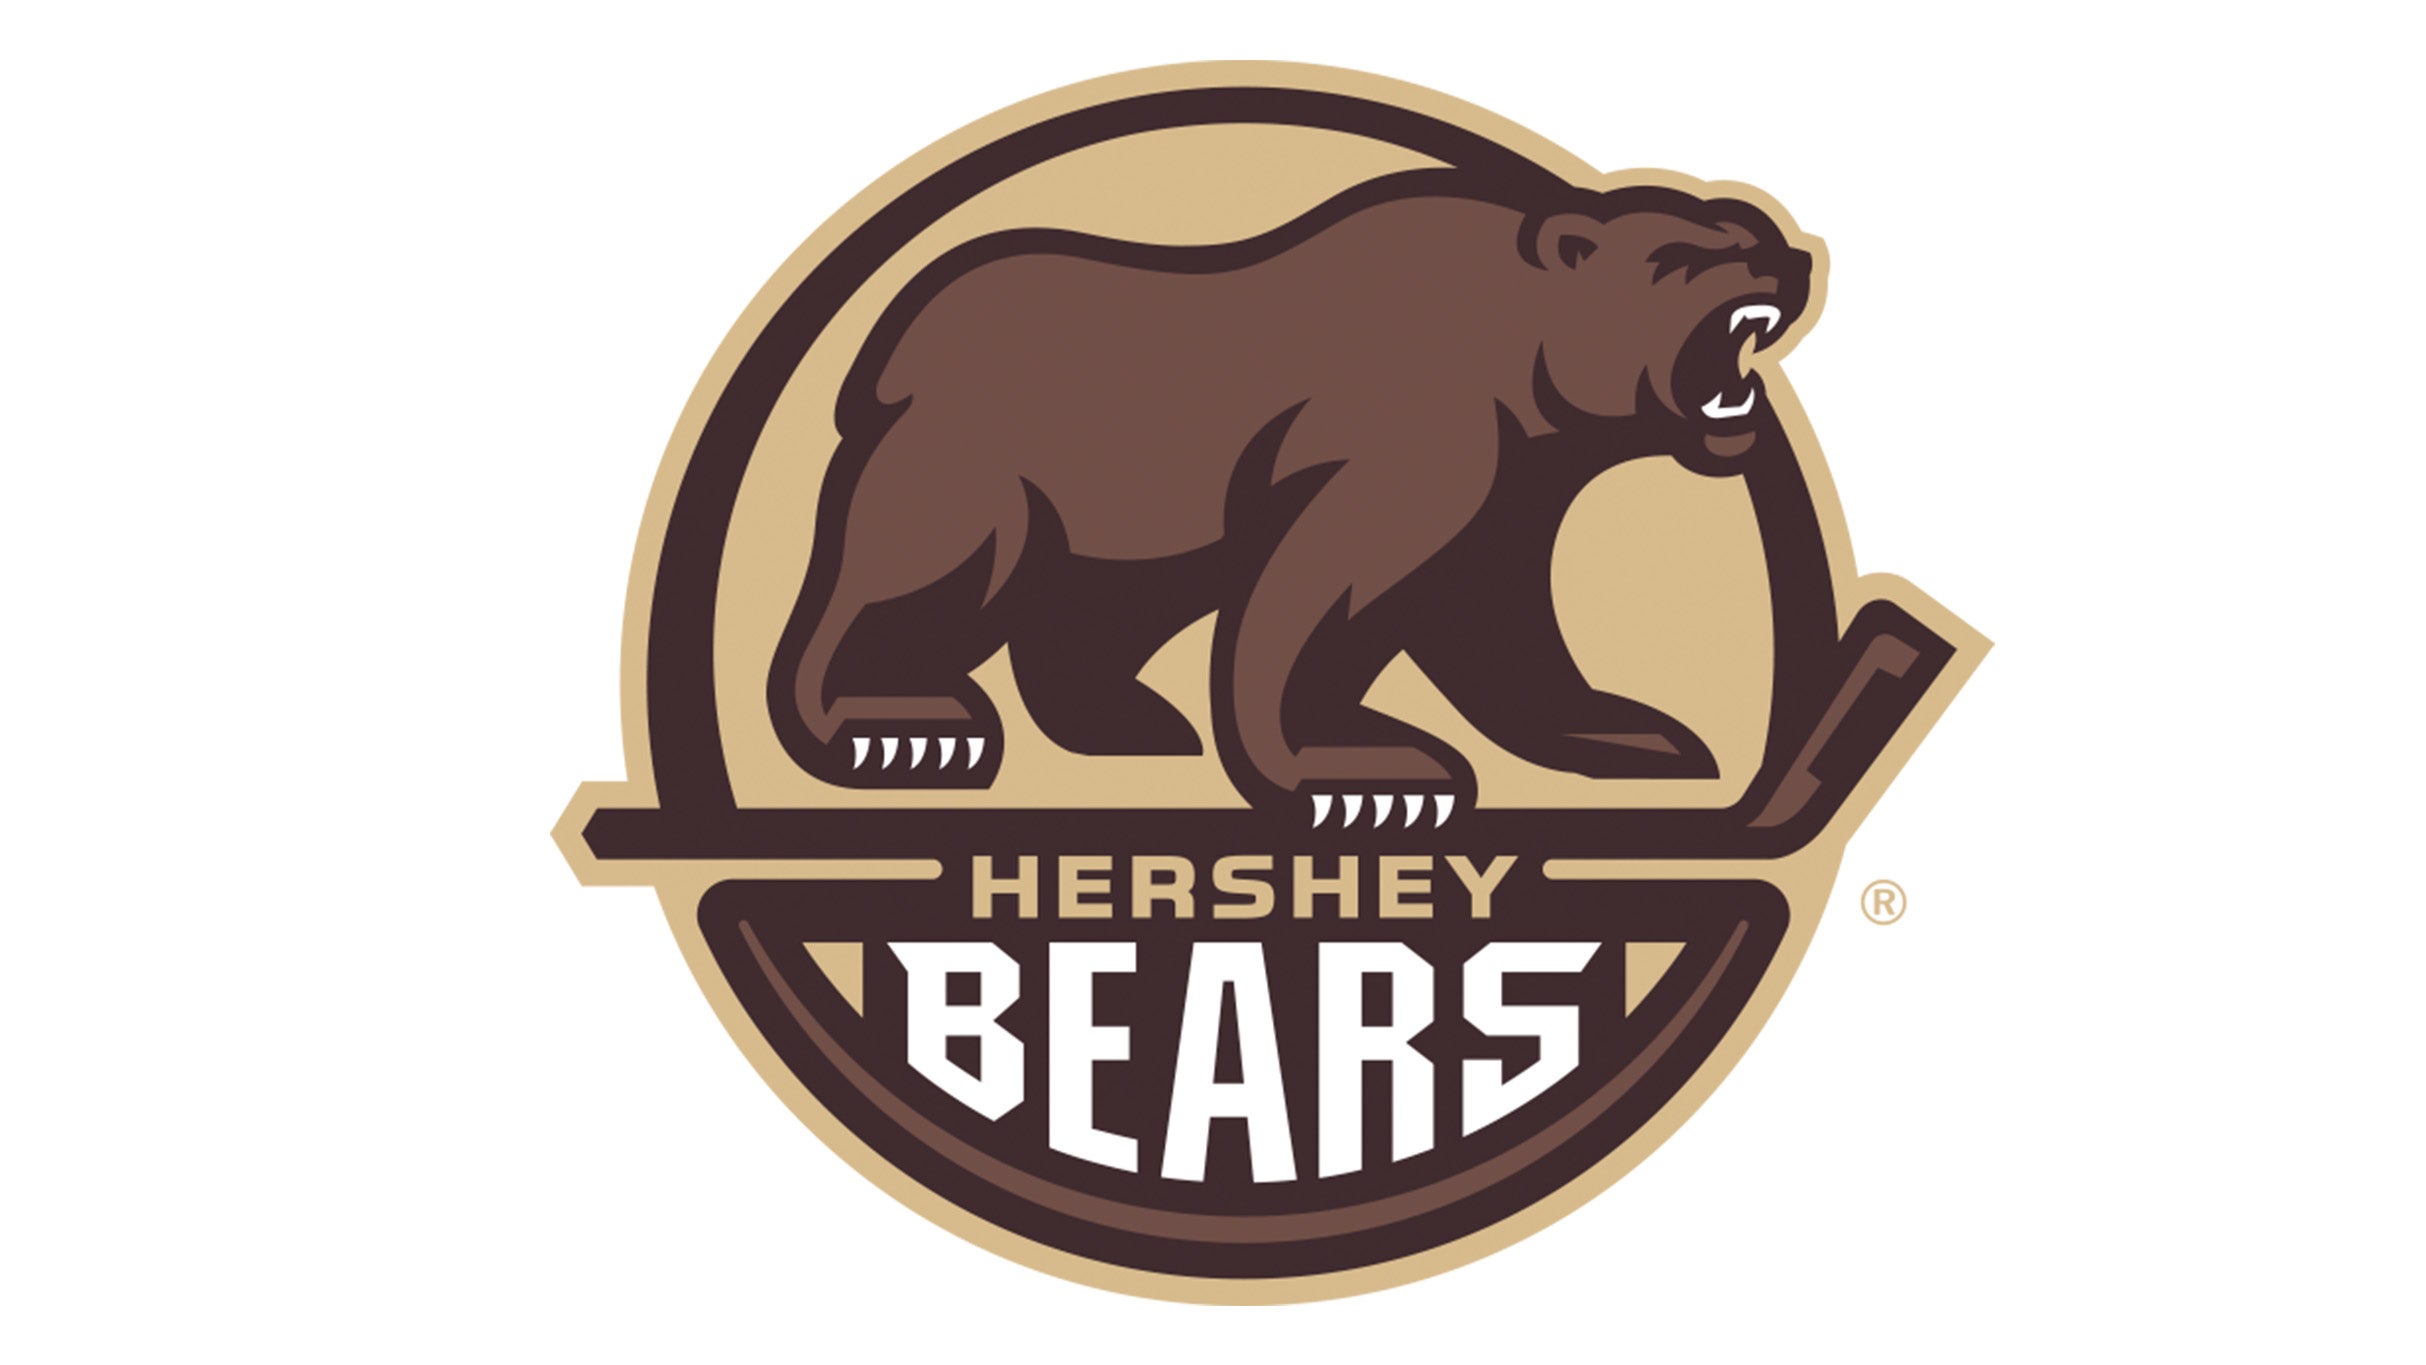 Hershey Bears vs. Lehigh Valley Phantoms in Hershey promo photo for Full Season presale offer code